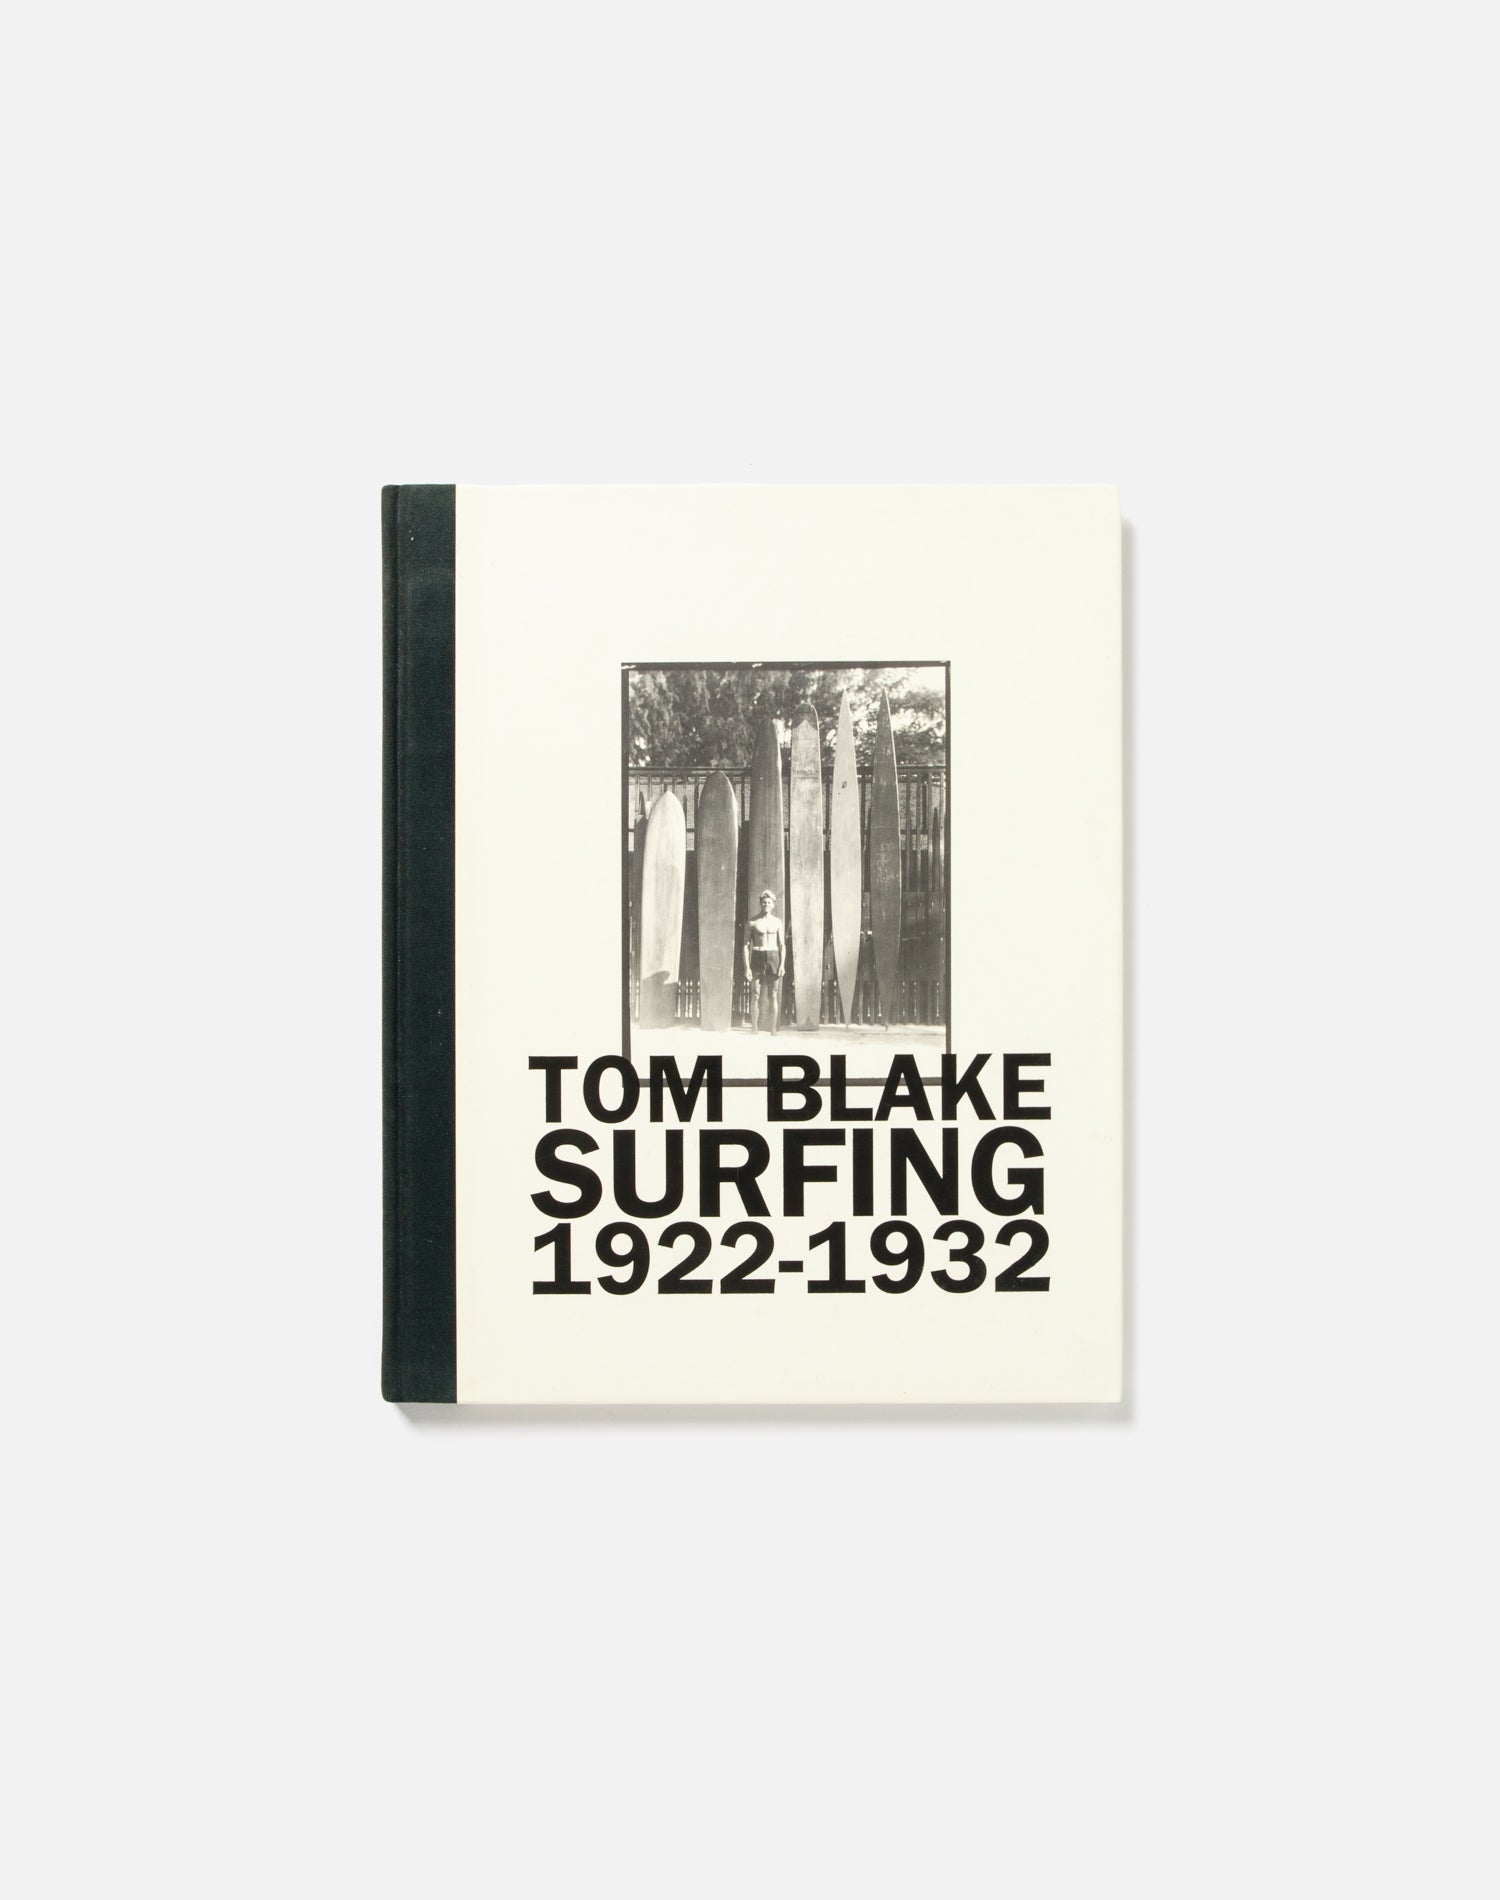 1999 Tom Blake "Surfing" Book